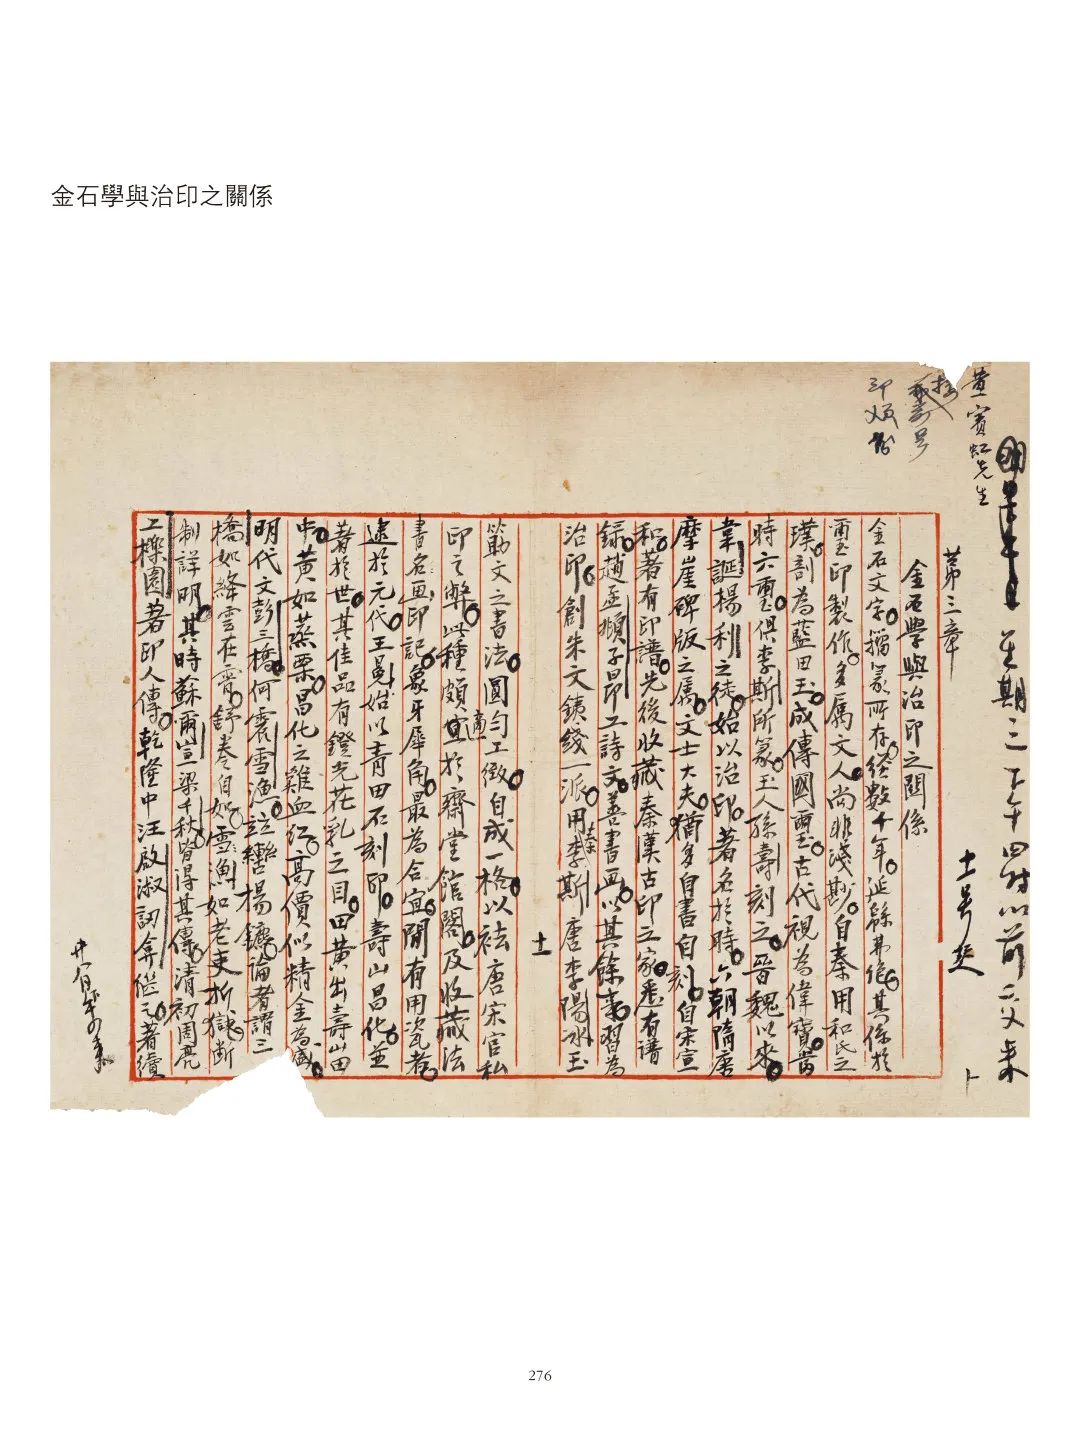 国内最具学术与艺术价值的玺印收藏集合体之一《古物影——黄宾虹古玺印收藏集萃》(图134)